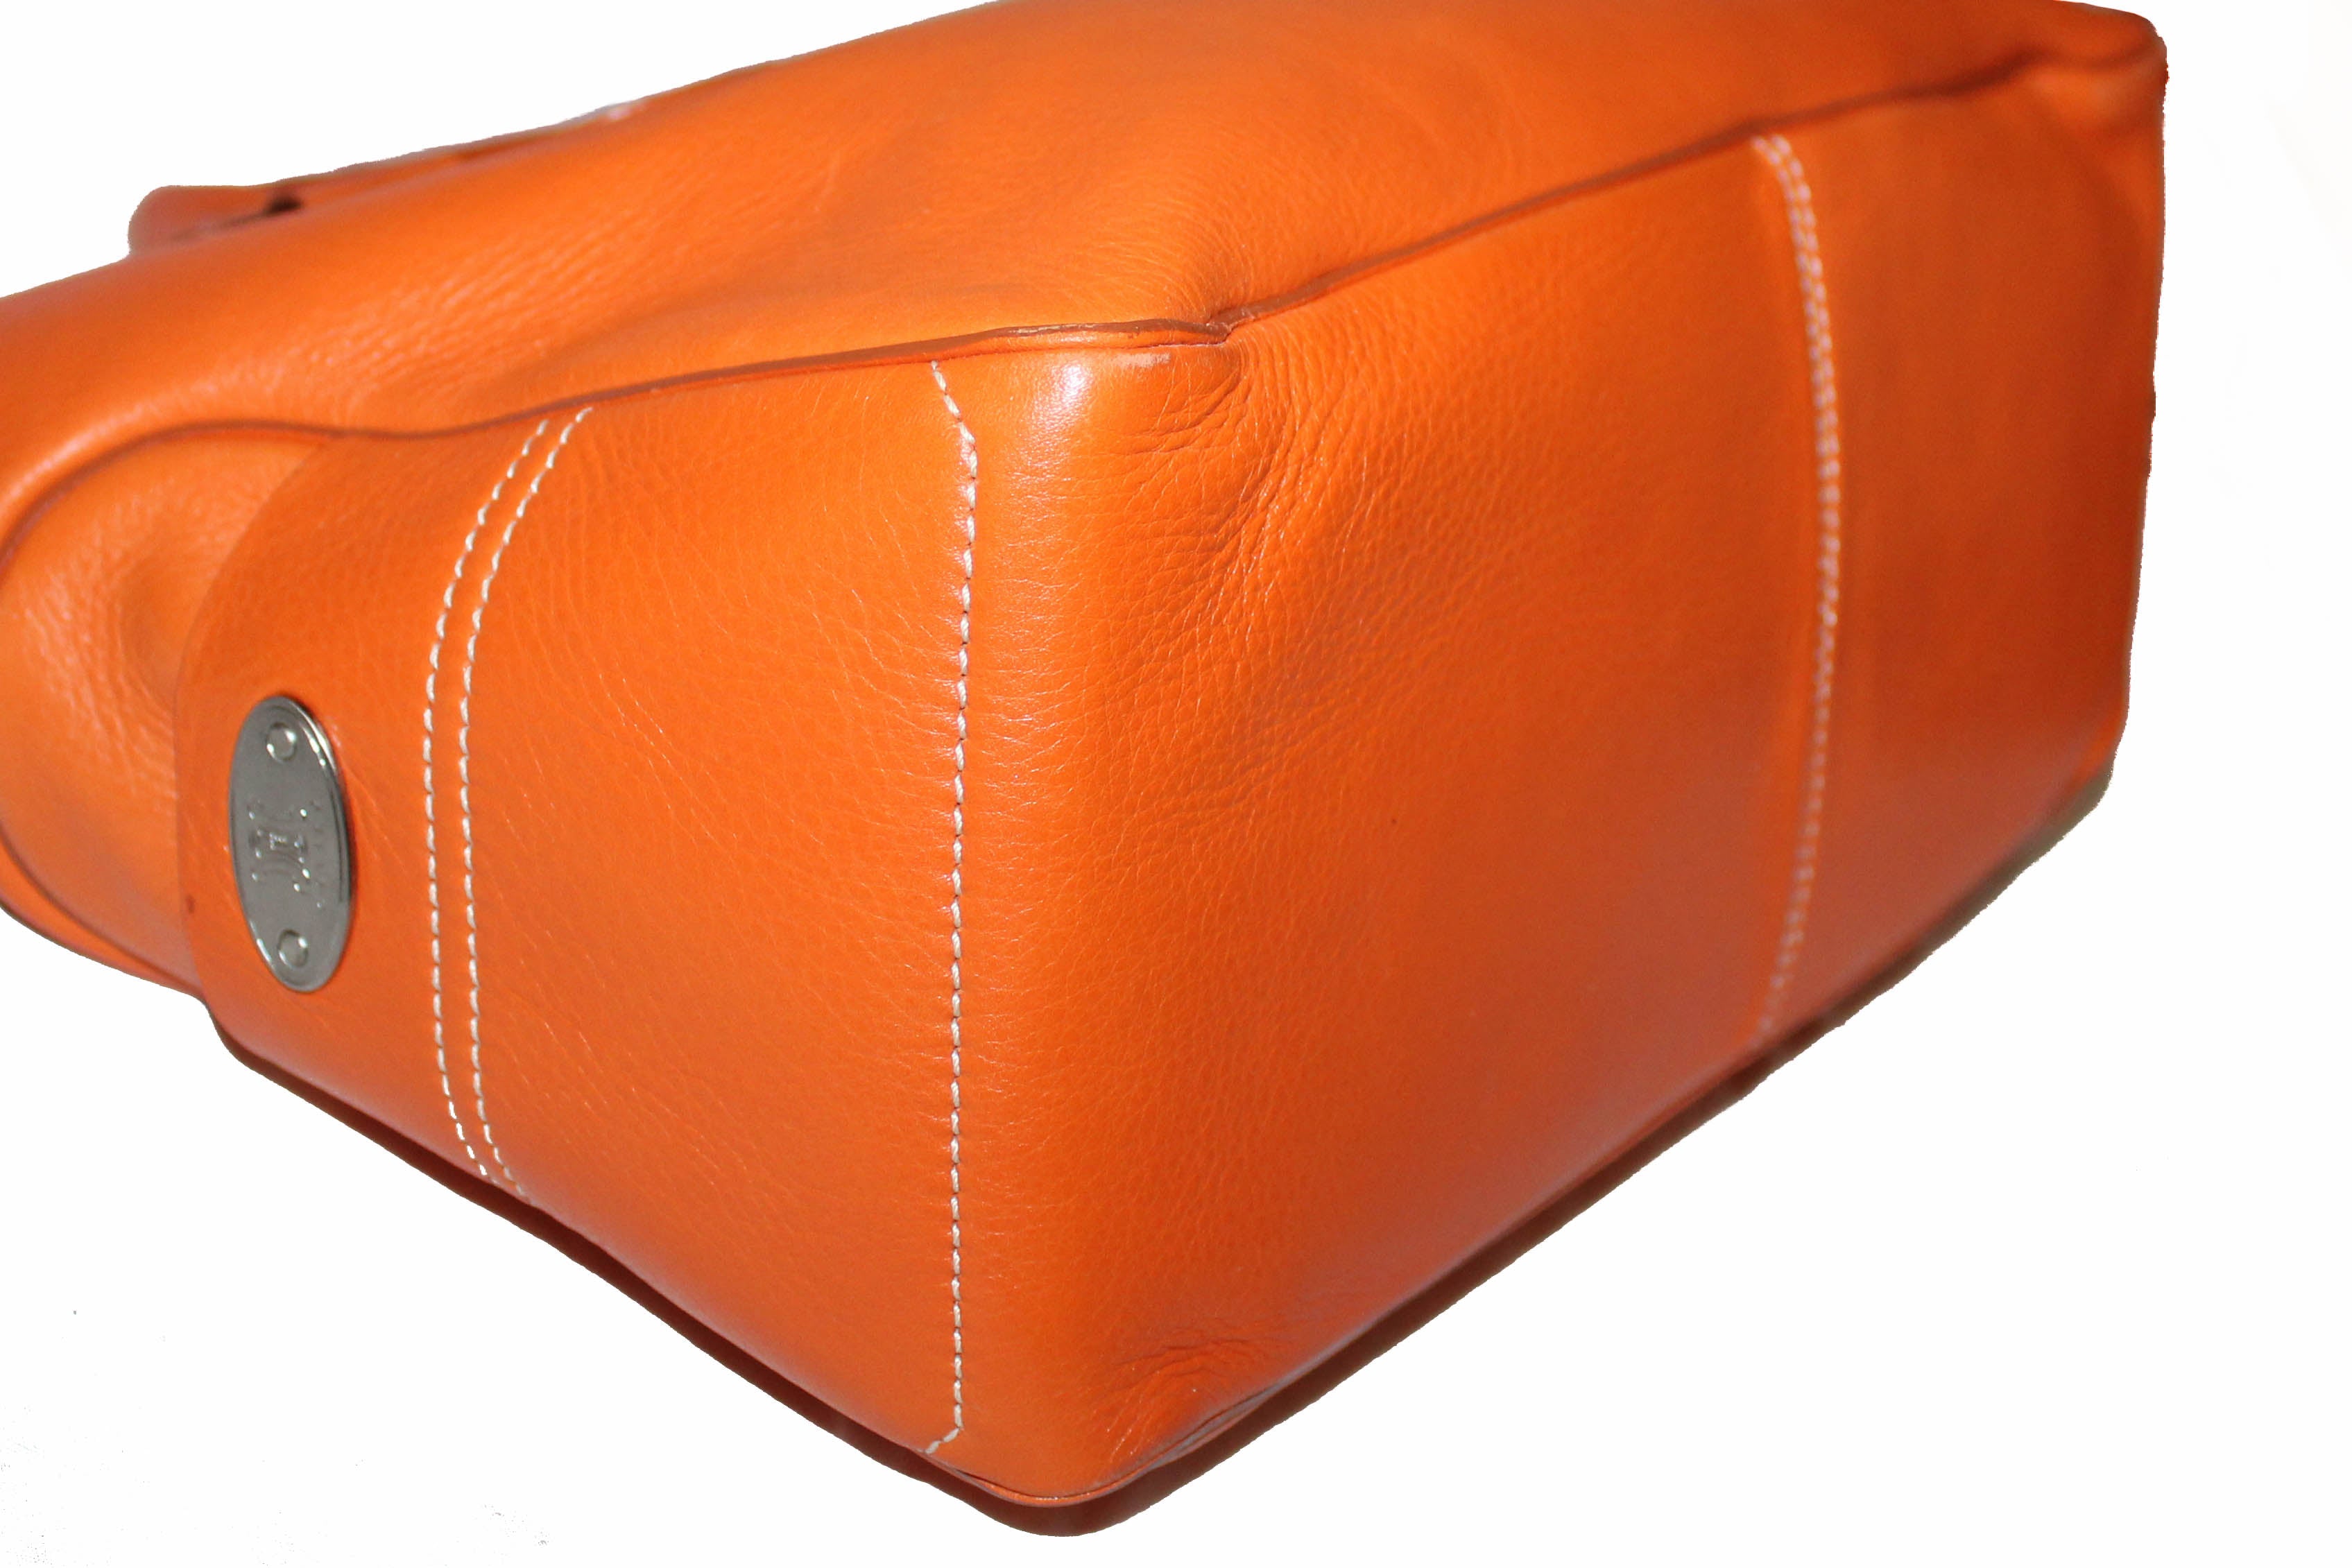 Authentic Celine Orange Leather Boogie Handbag